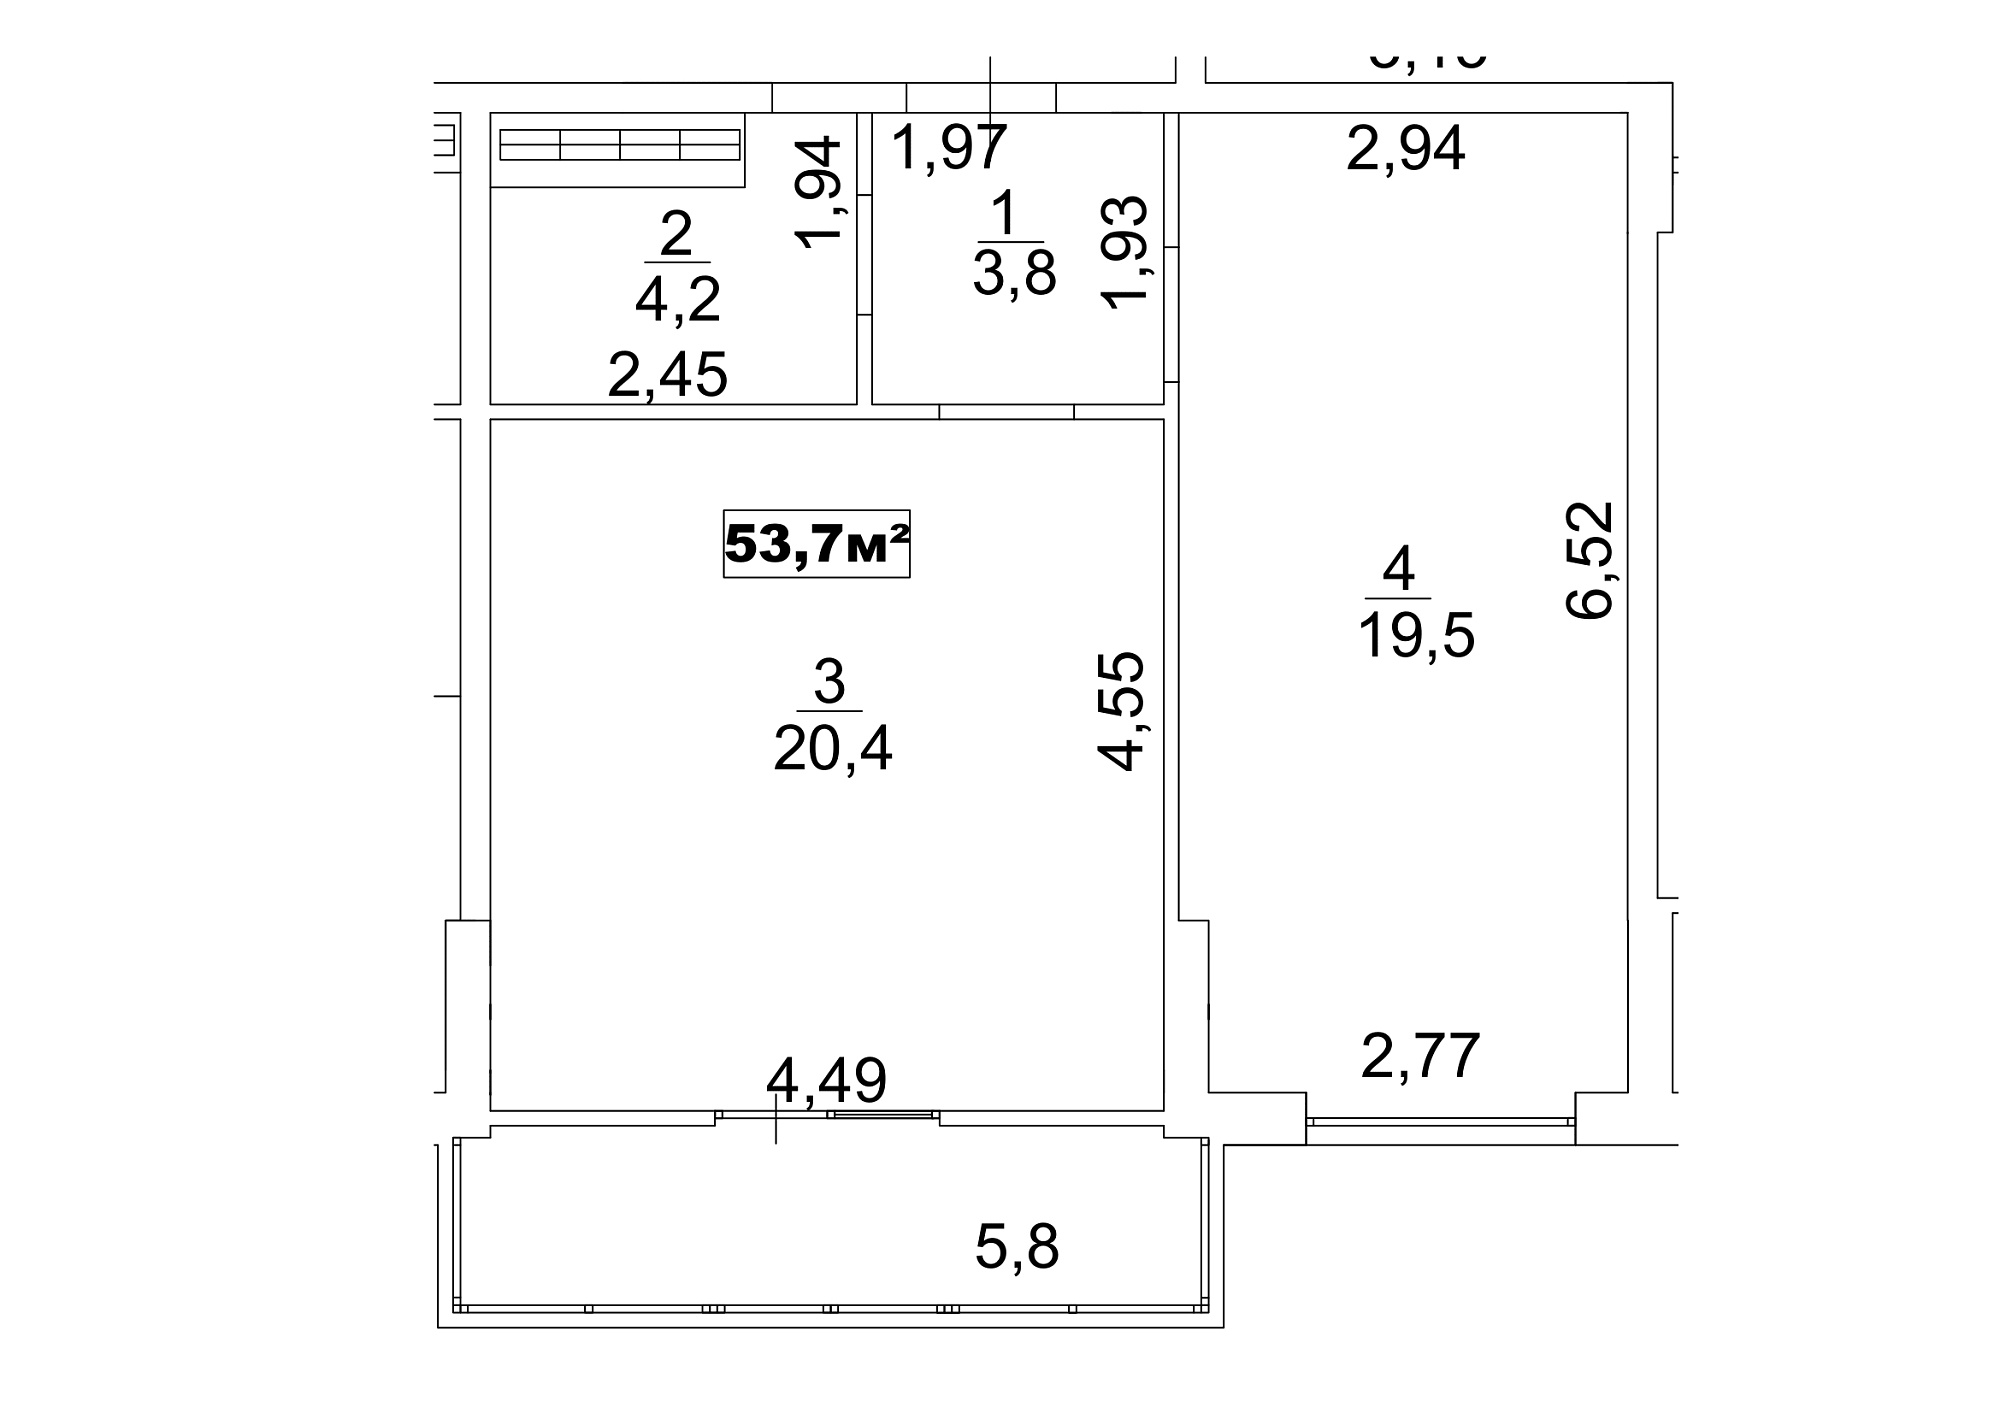 Планировка 1-к квартира площей 53.7м2, AB-13-02/00014.